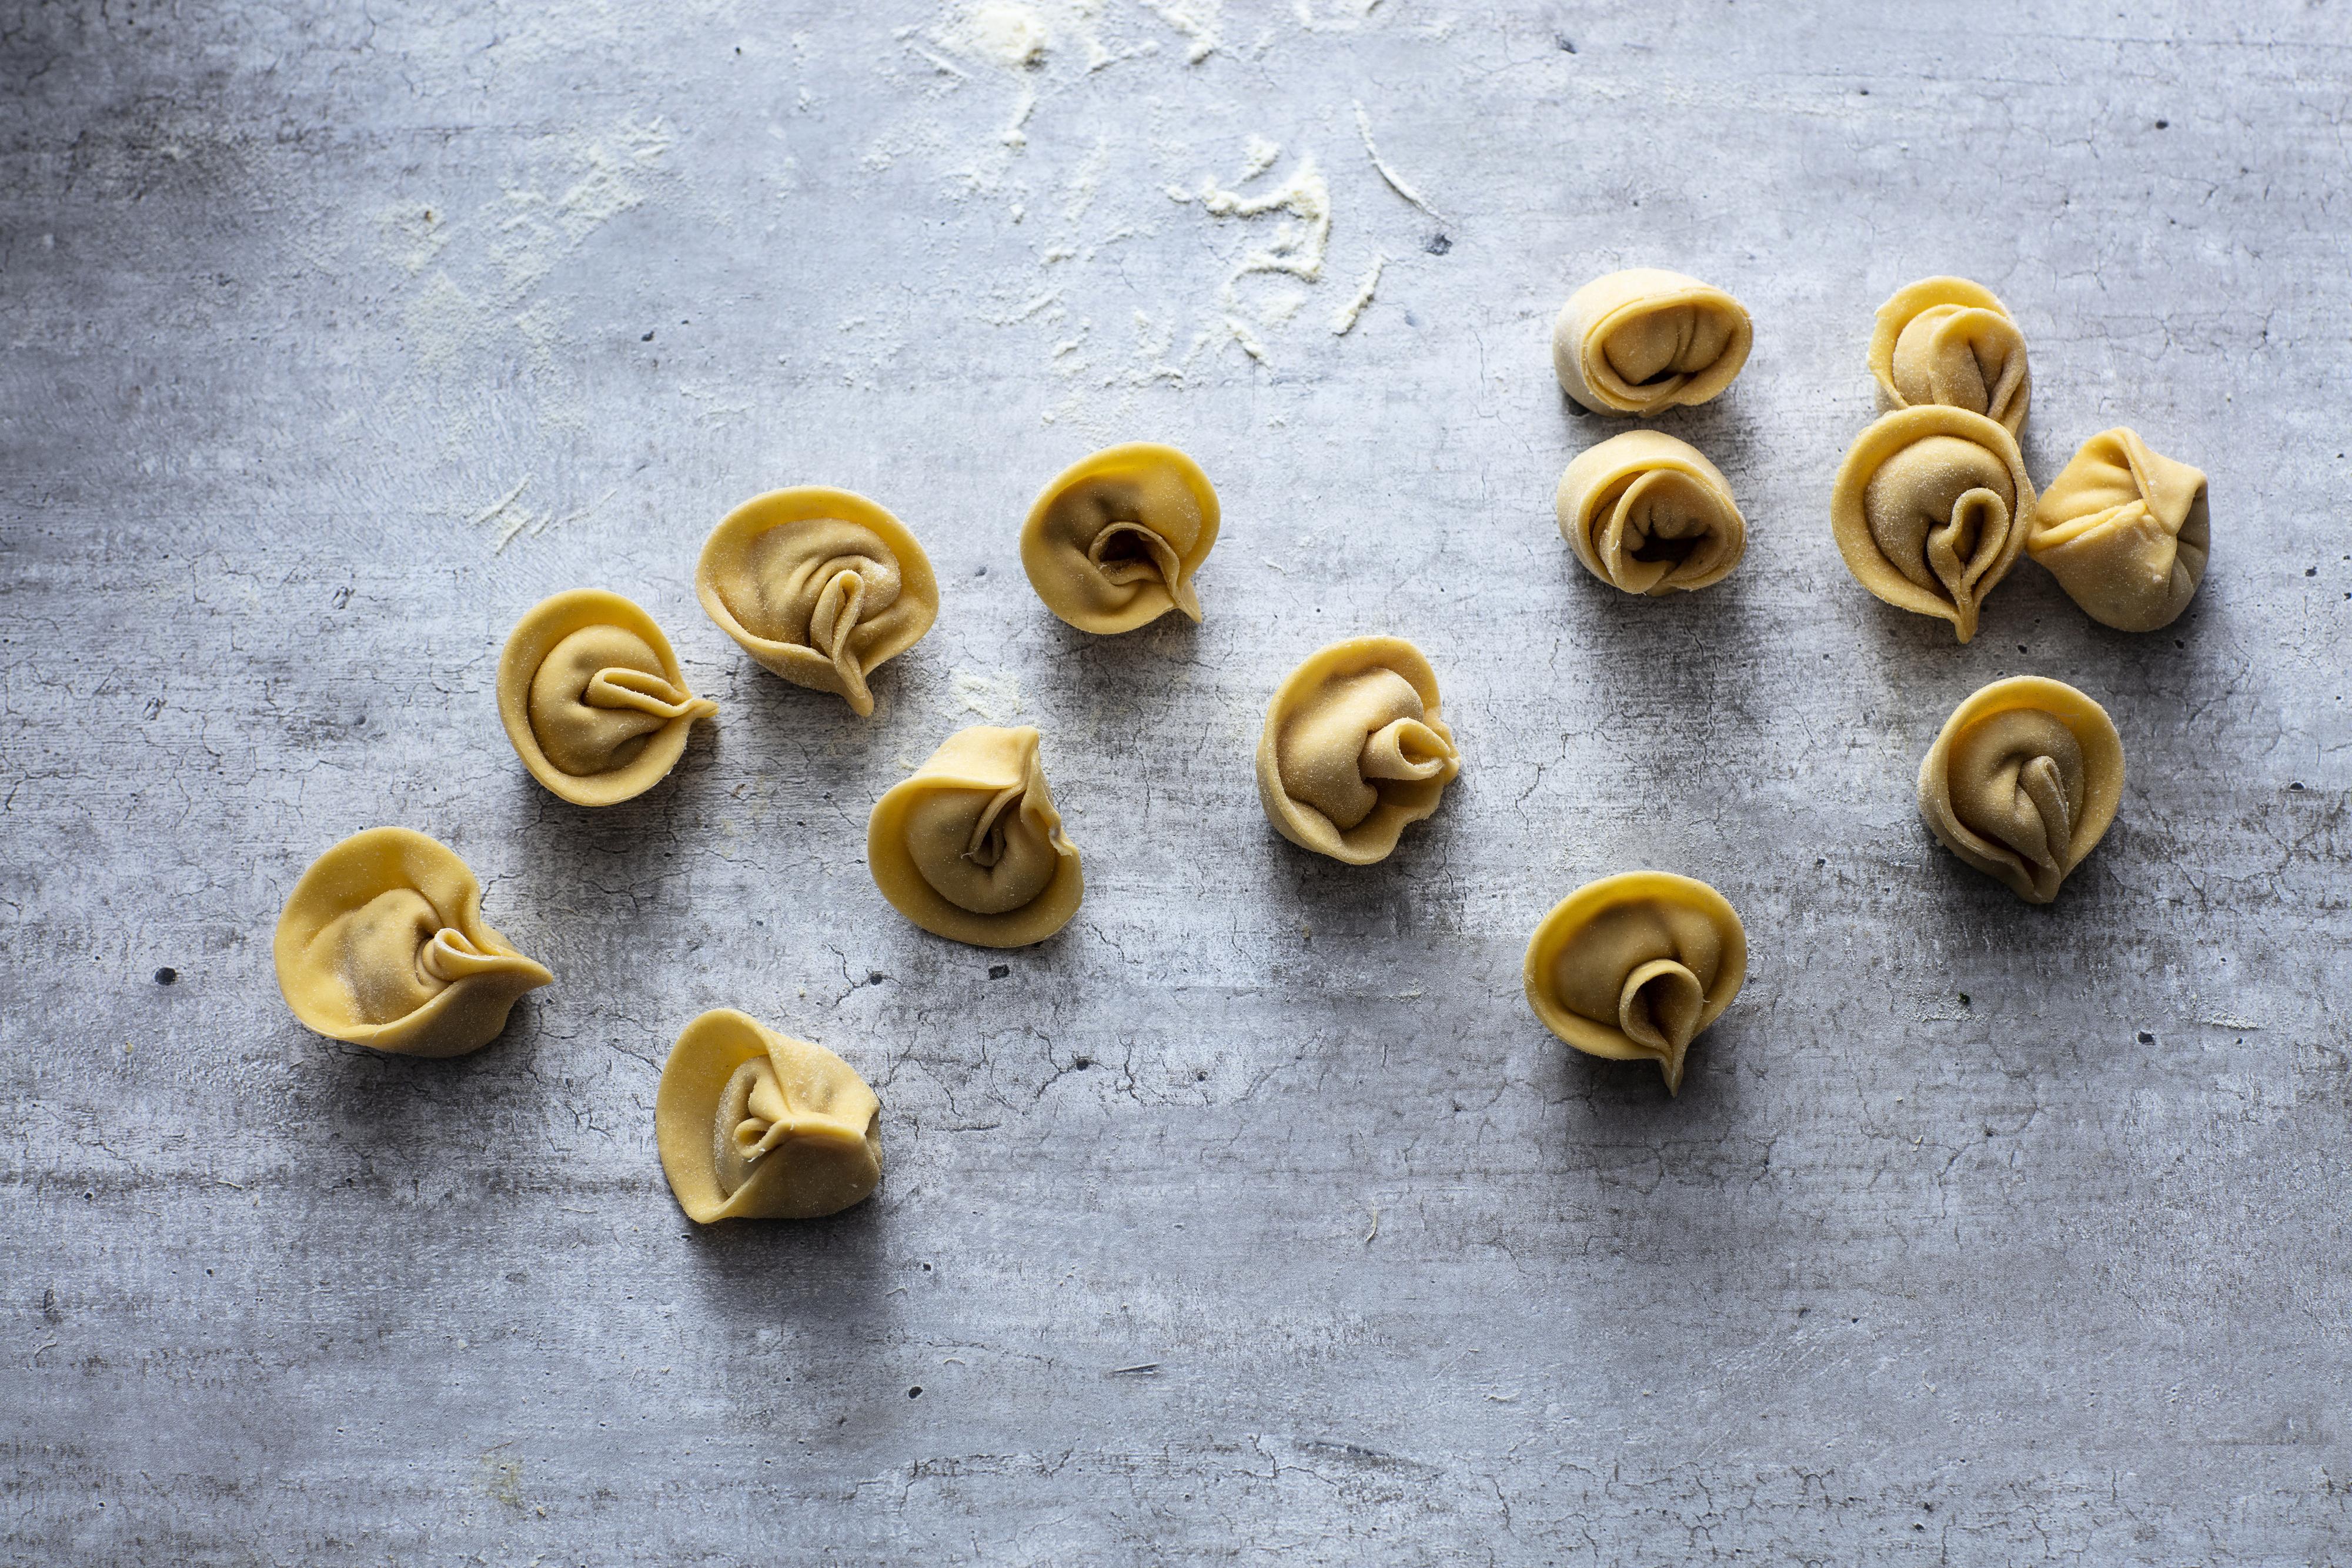 Fortsett å kjevle pastaen gjennom alle nivåene, minst to ganger per nivå, til ønsket tykkelse. Den skal være tynn. 